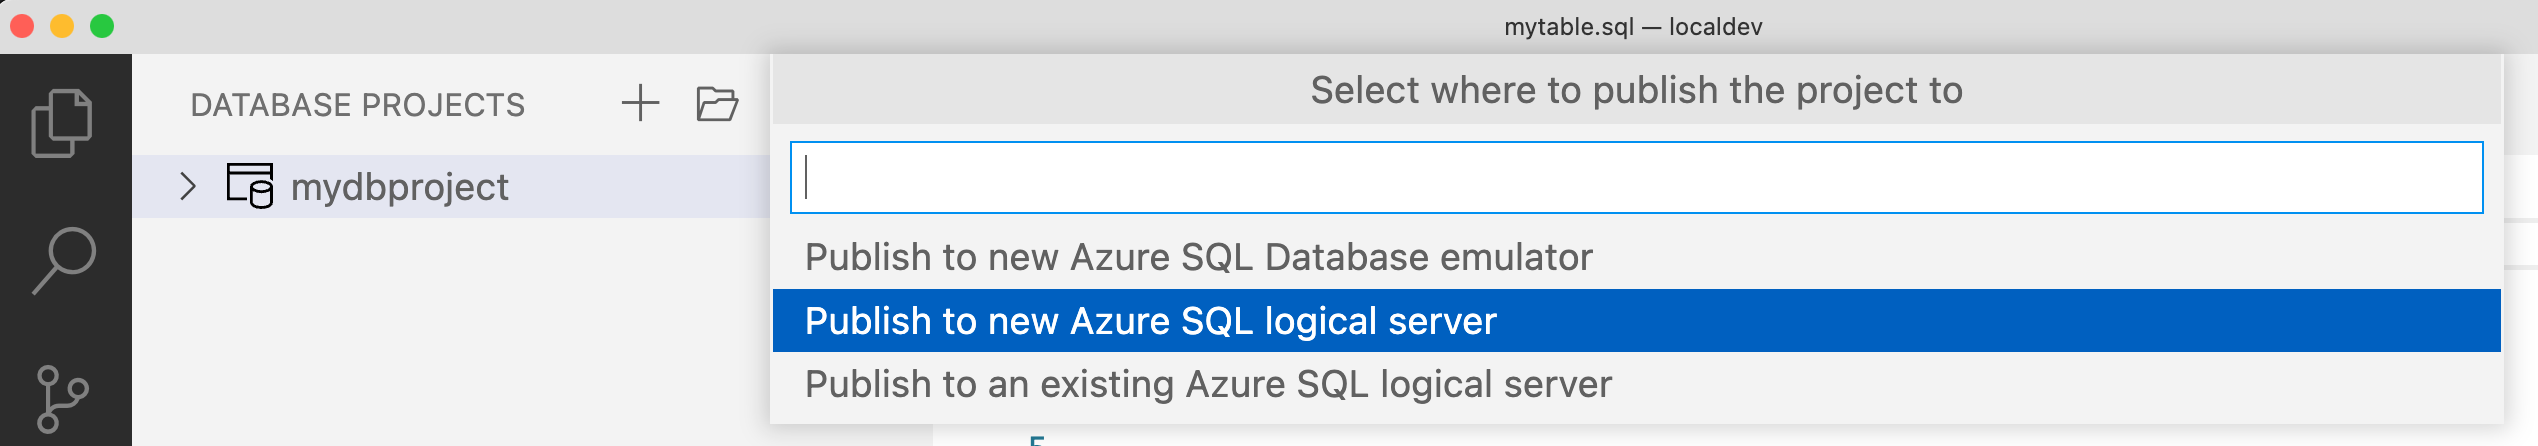 將資料庫專案發佈至 Azure SQL Database 的螢幕擷取畫面。